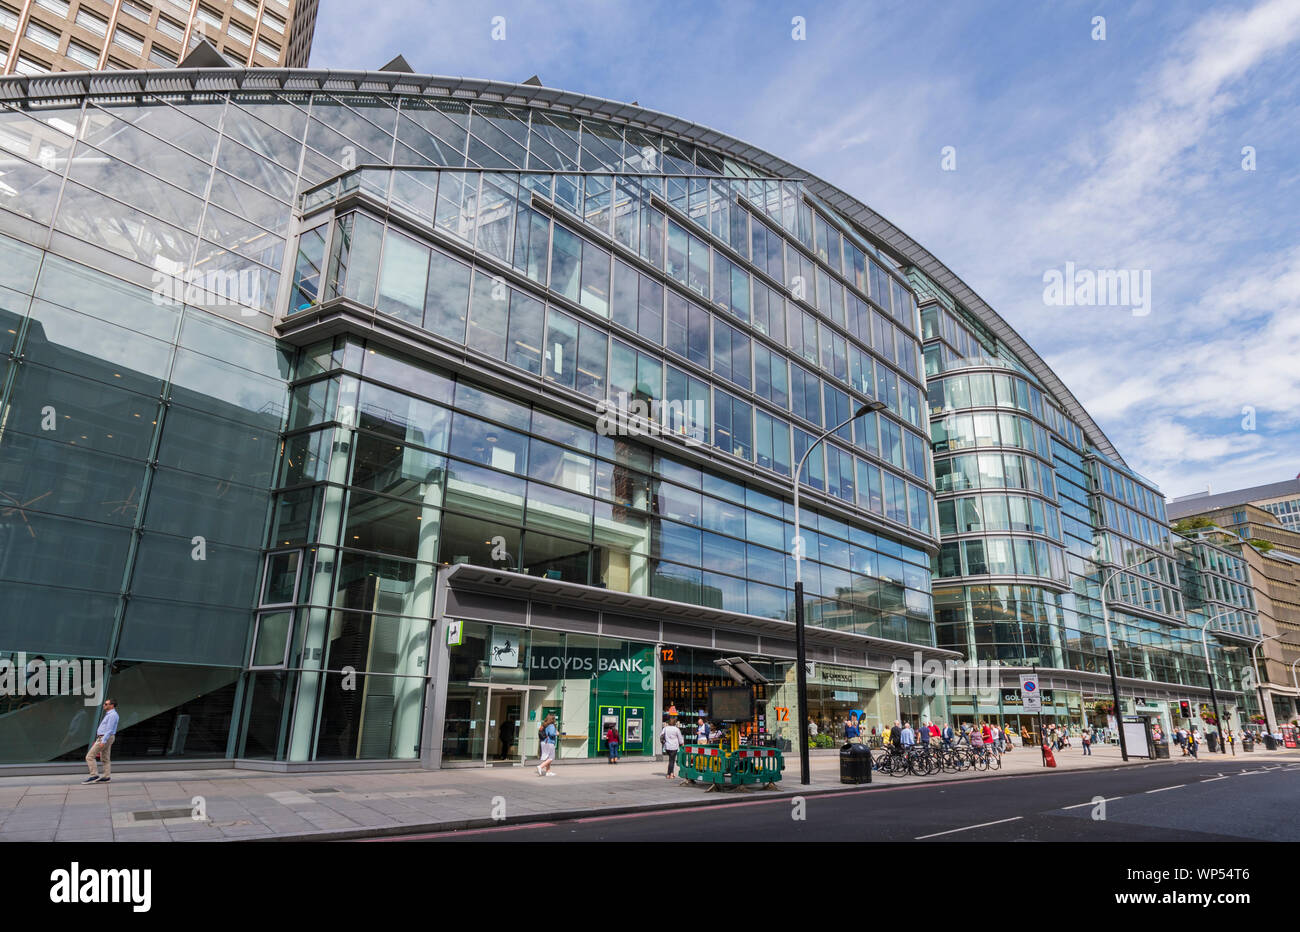 Kardinal Place Shopping Center & Office Block, ein modernes Gebäude von 2005 in der Victoria Street, Westminster, London, England, UK. Stockfoto